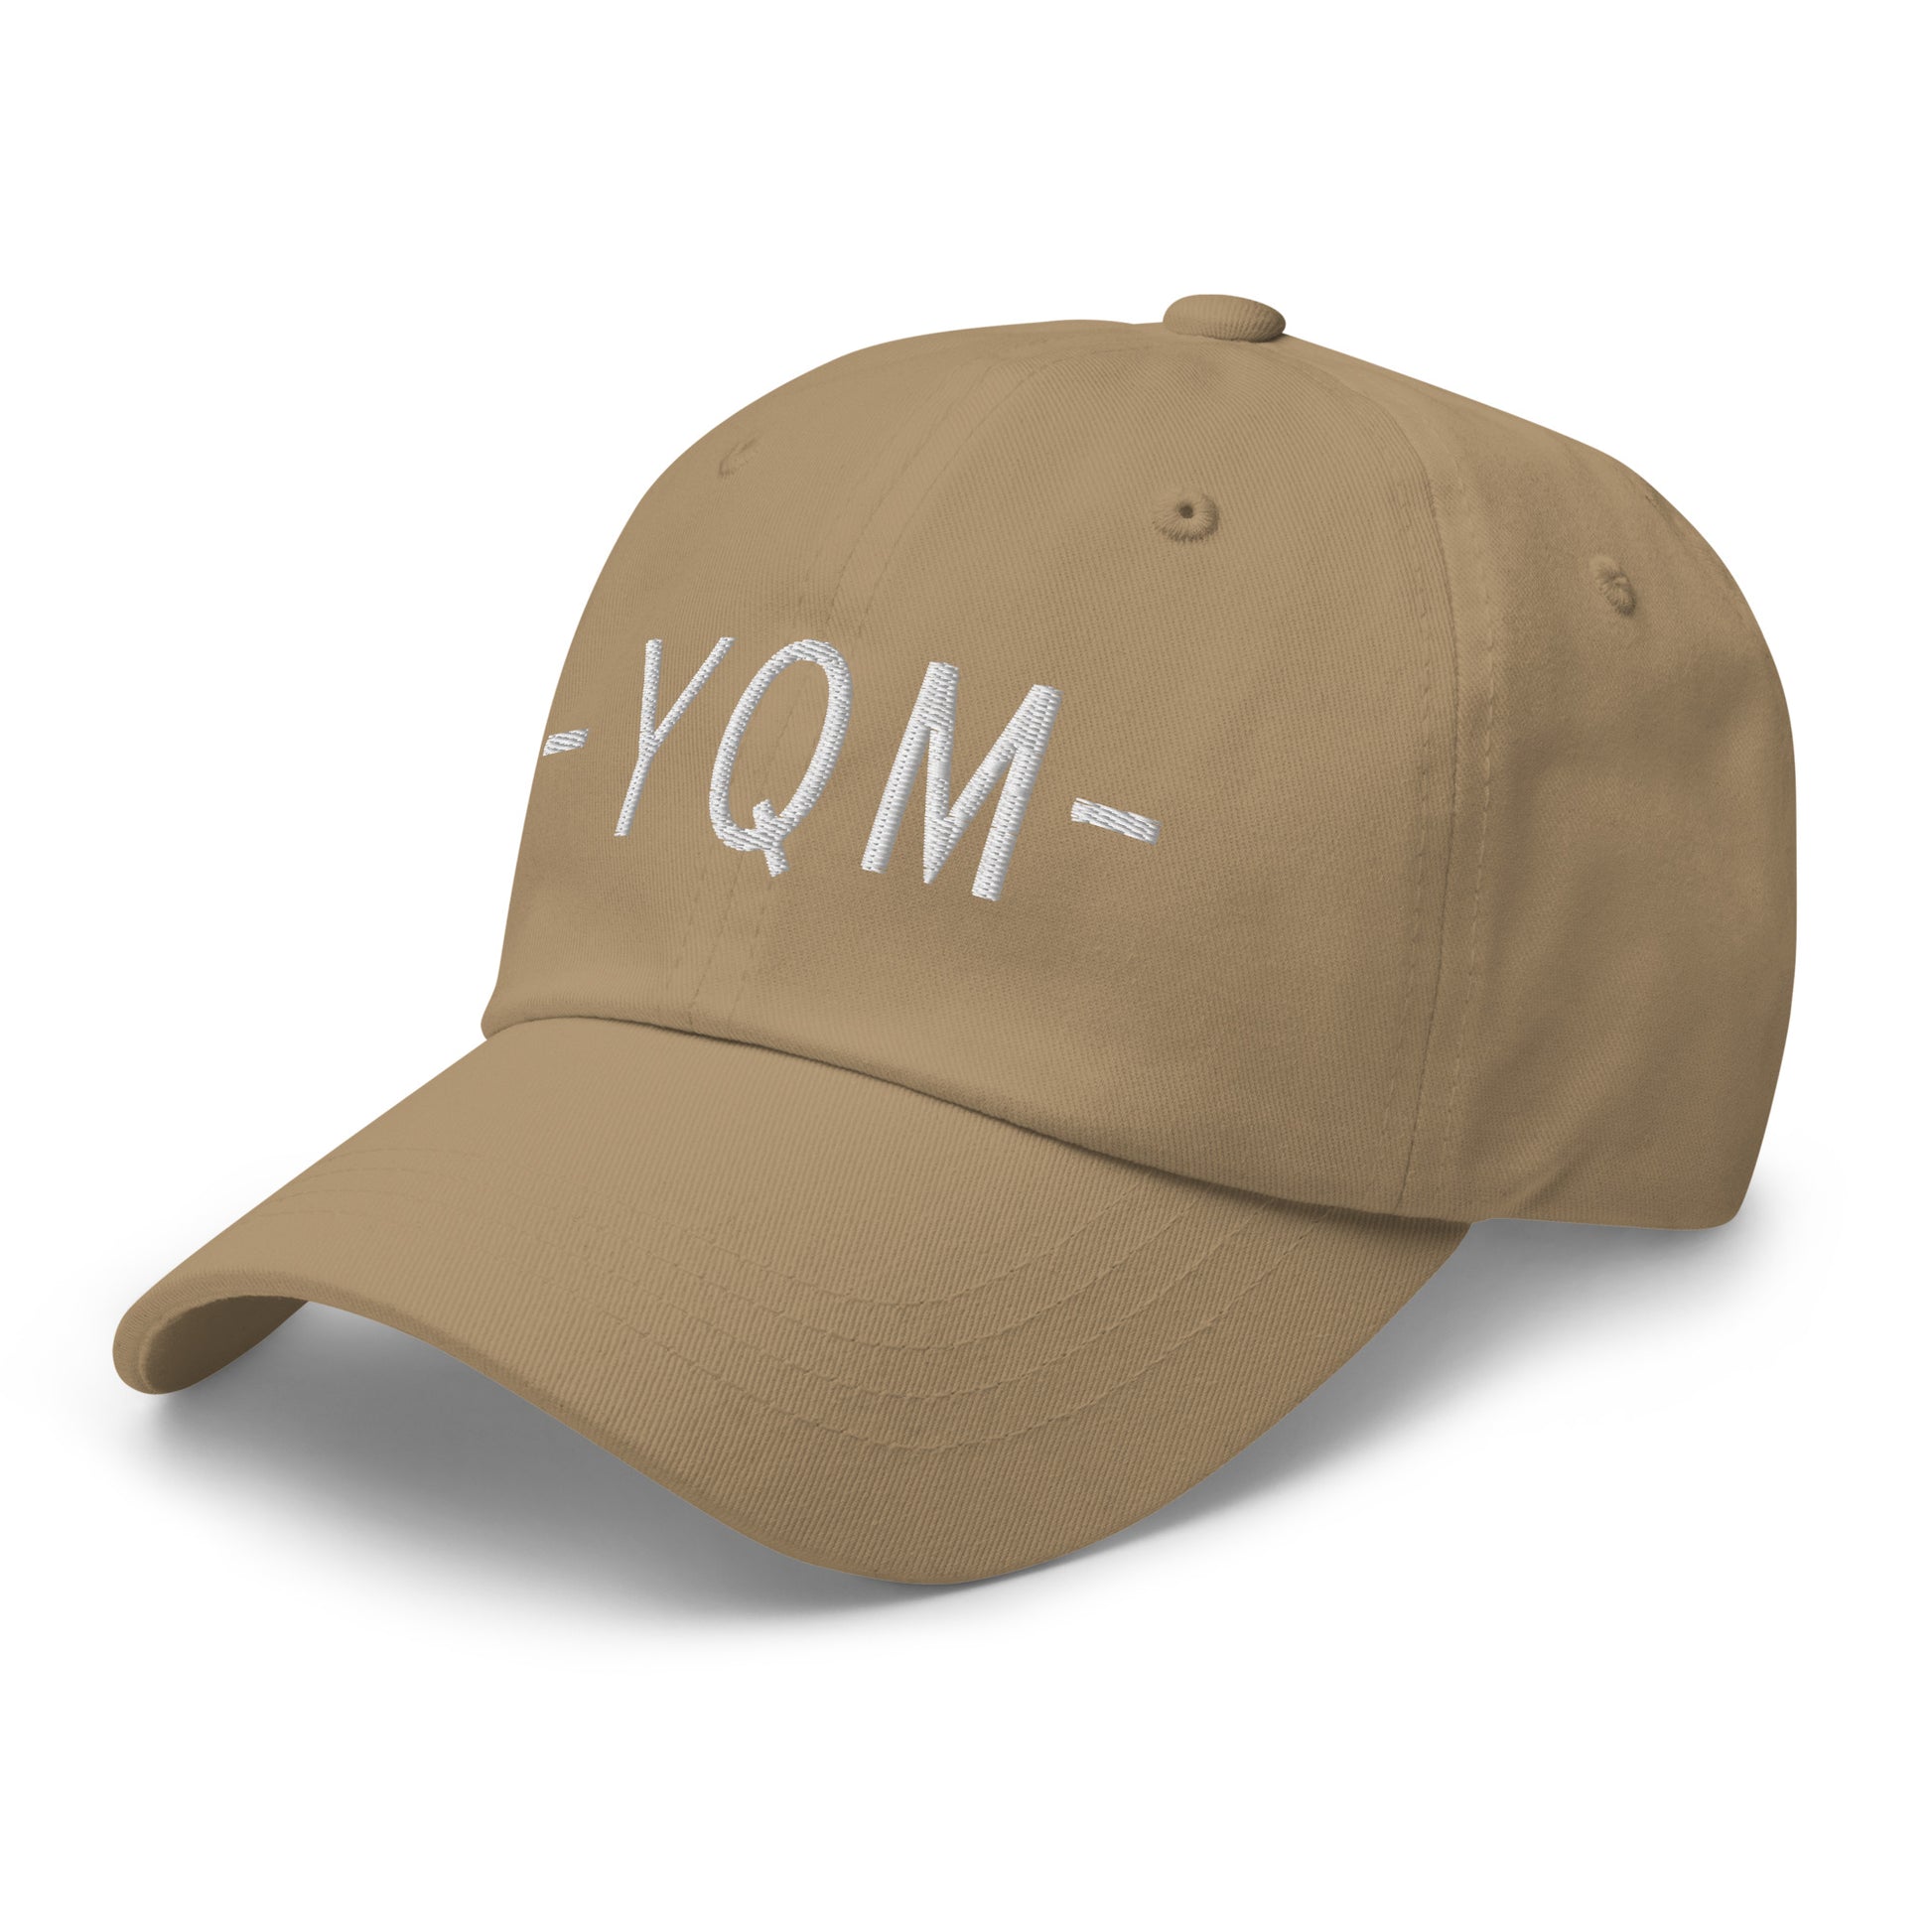 Souvenir Baseball Cap - White • YQM Moncton • YHM Designs - Image 22